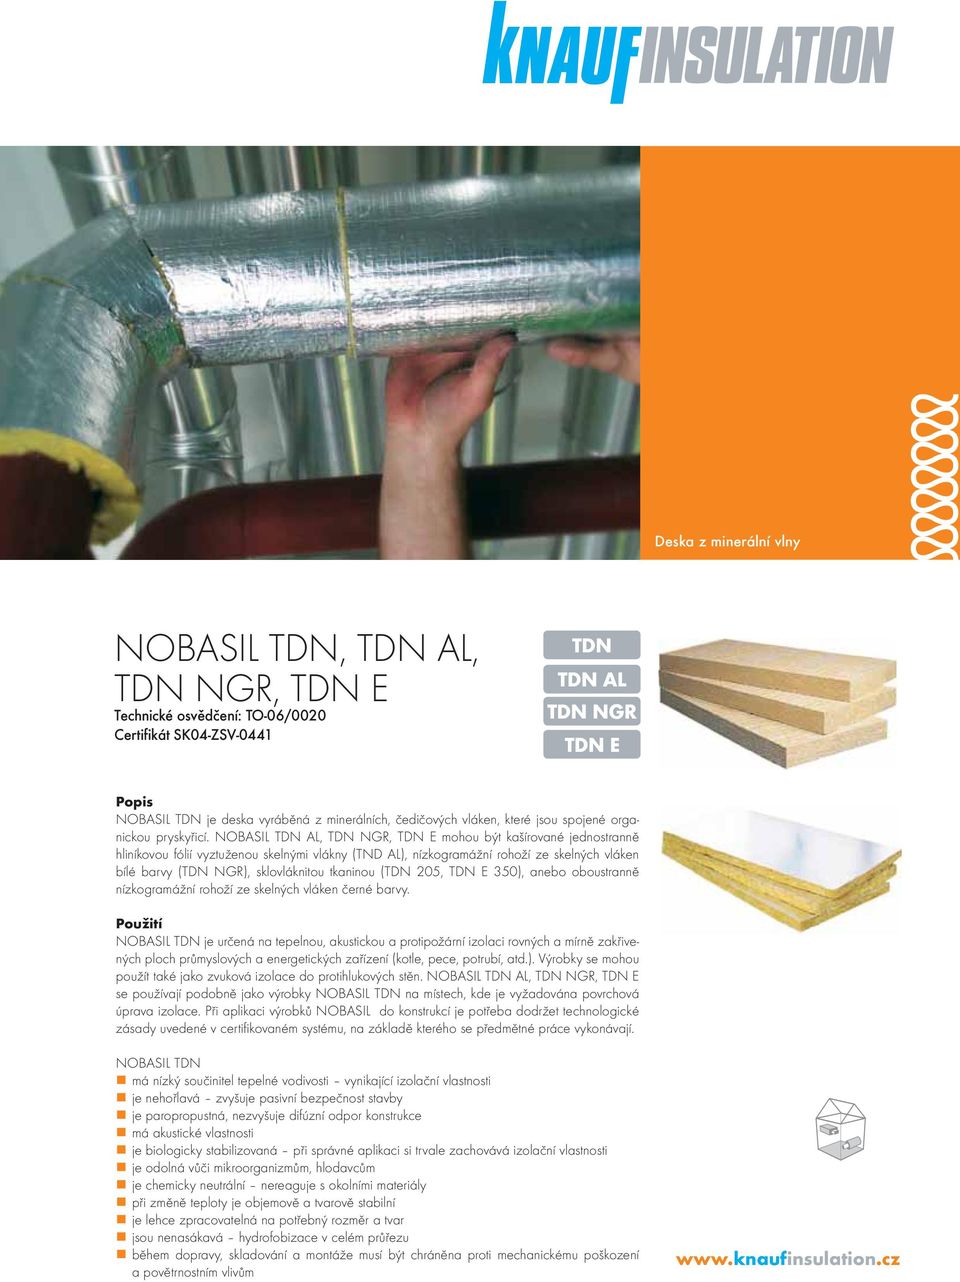 NOBASIL TDN AL, TDN NGR, TDN E mohou být kašírované jednostranně hliníkovou fólií vyztuženou skelnými vlákny (TND AL), nízkogramážní rohoží ze skelných vláken bílé barvy (TDN NGR), sklovláknitou